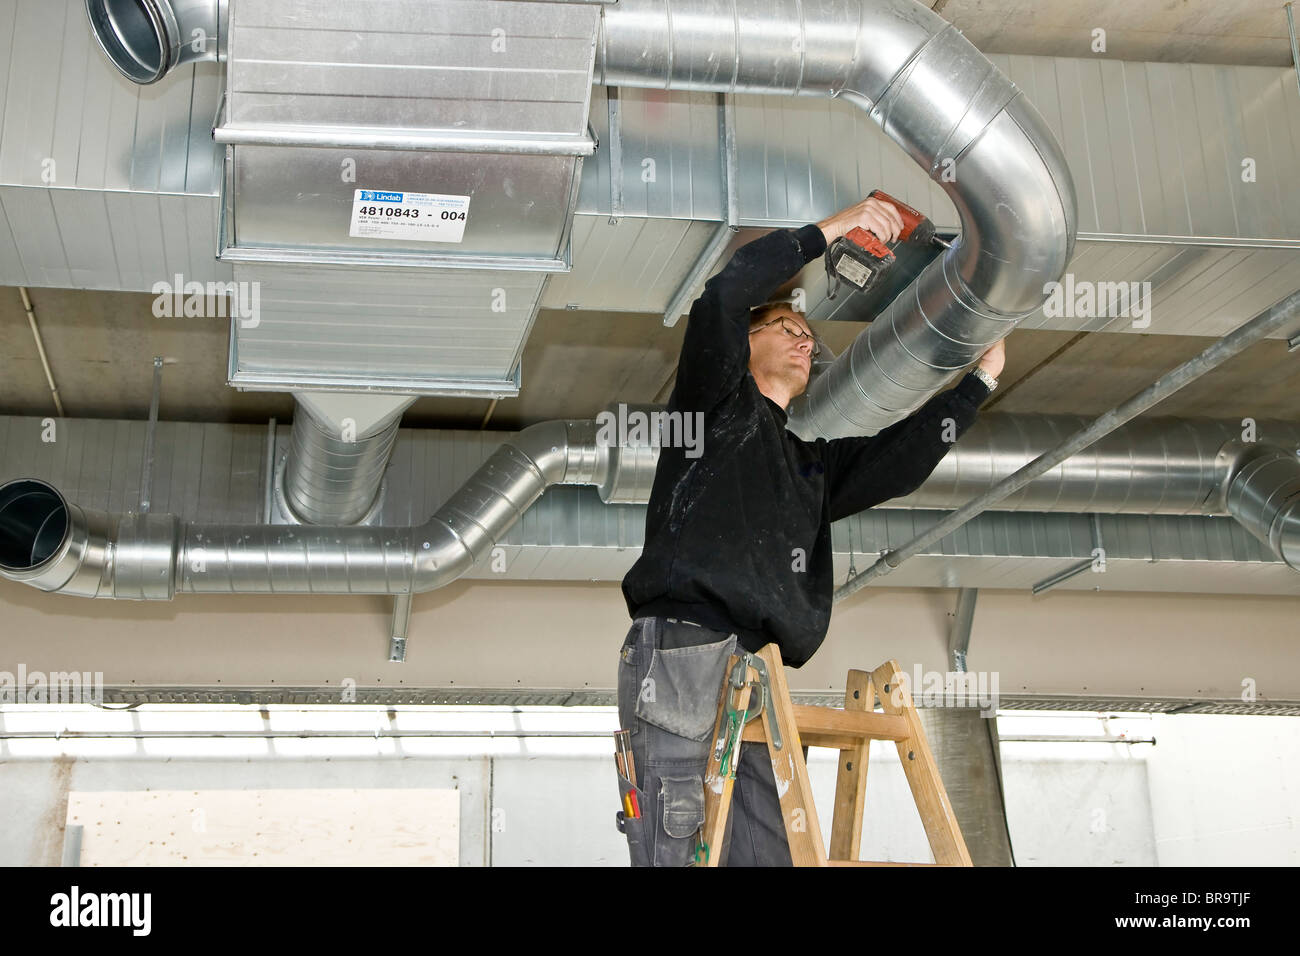 Monteur Ventilation de l'installation d'un tuyau de ventilation Photo Stock  - Alamy